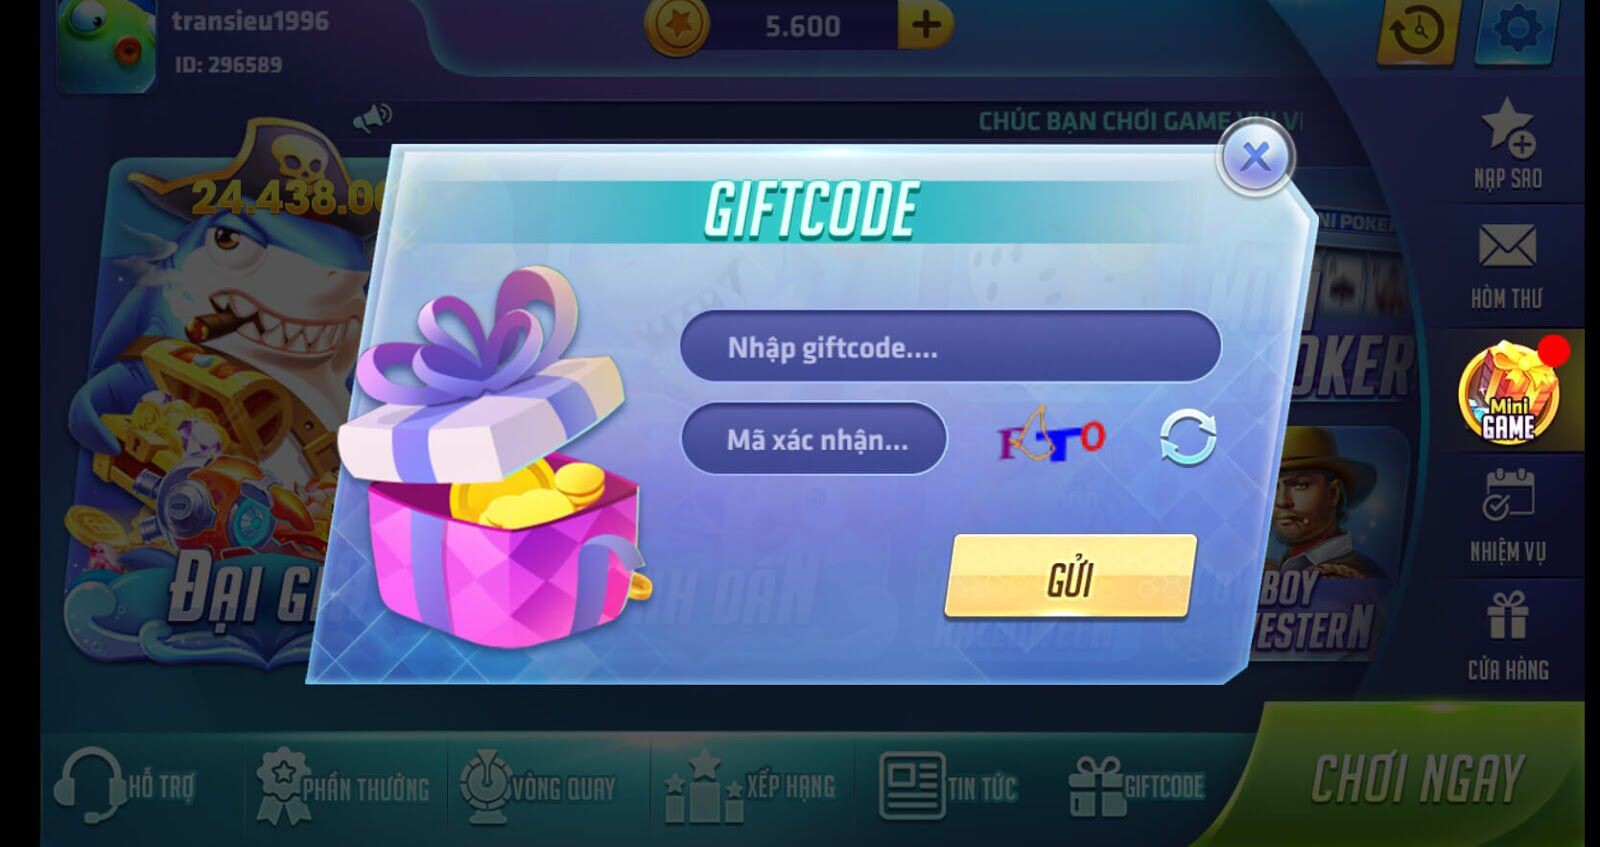 giftcode ban ca rong